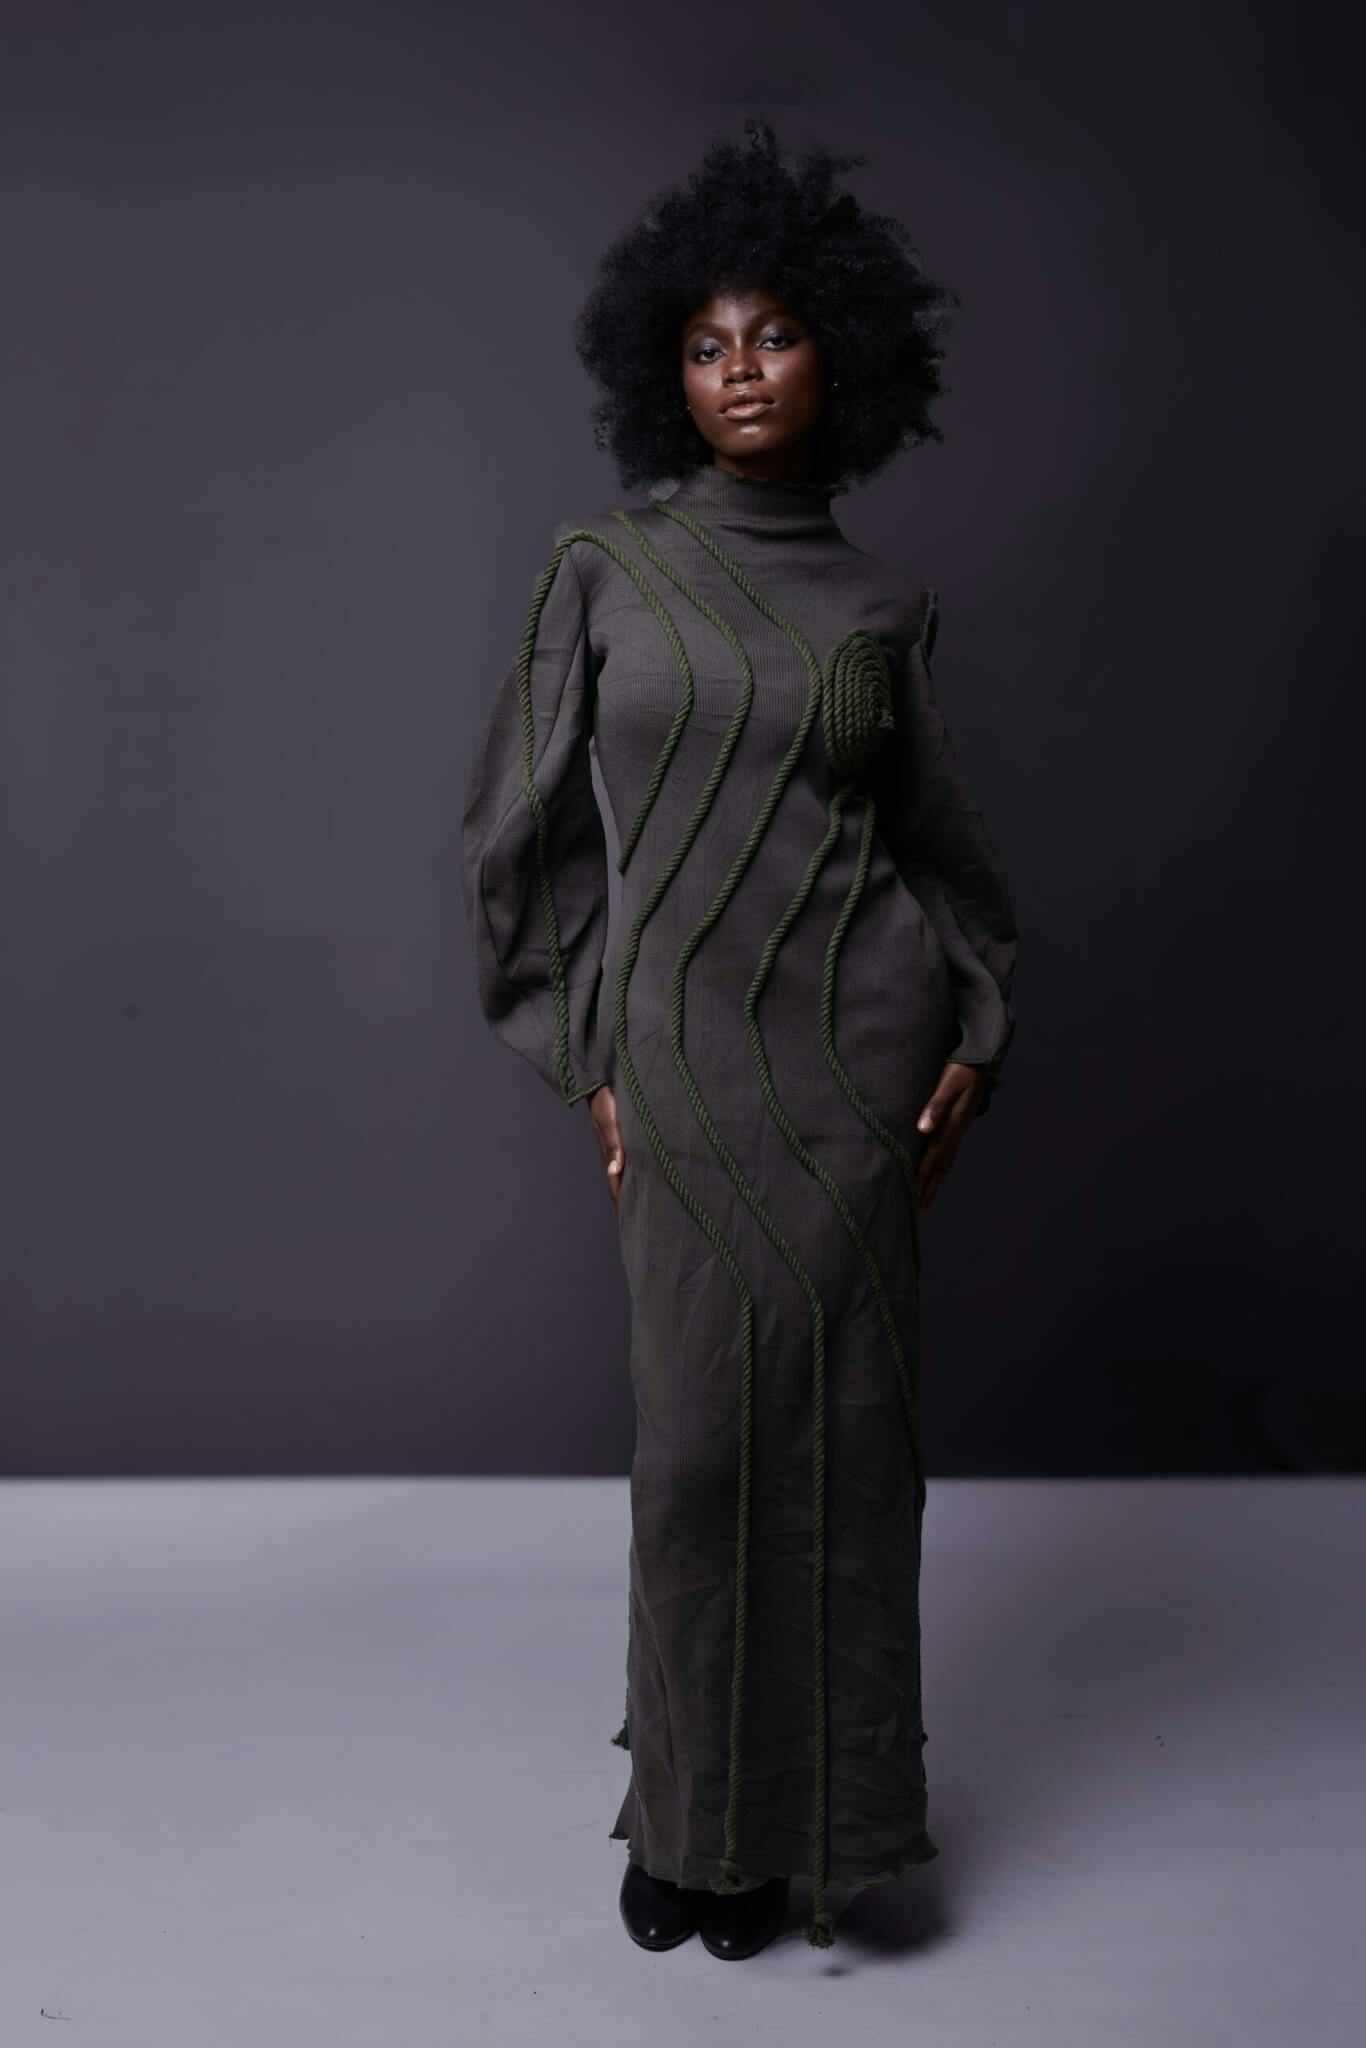 The Kula dress, a product by Joseph Ejiro